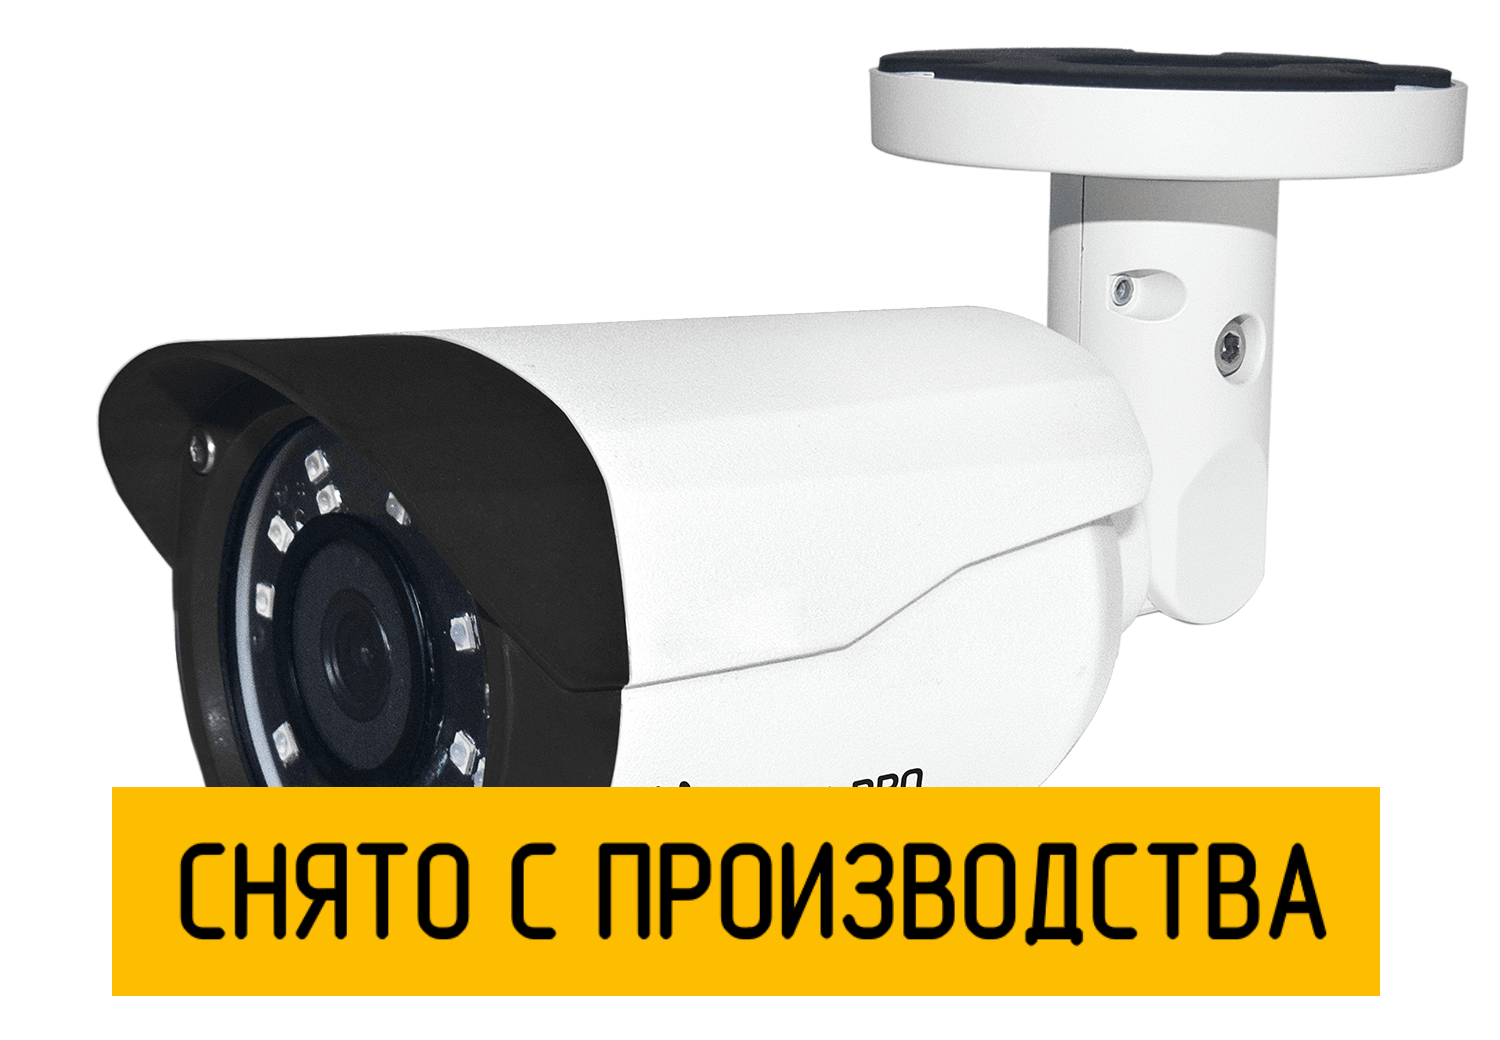 Цилиндрическая IP камера StreetCAM.net 960m 2.8 мм